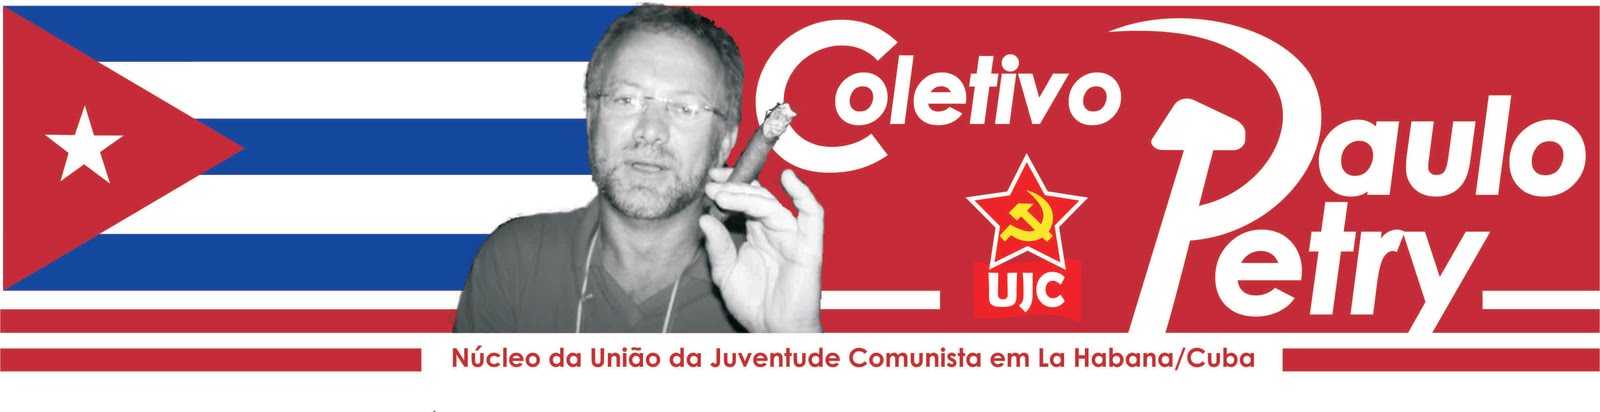 União da Juventude Comunista (UJC) em Cuba - Coletivo Paulo Petry